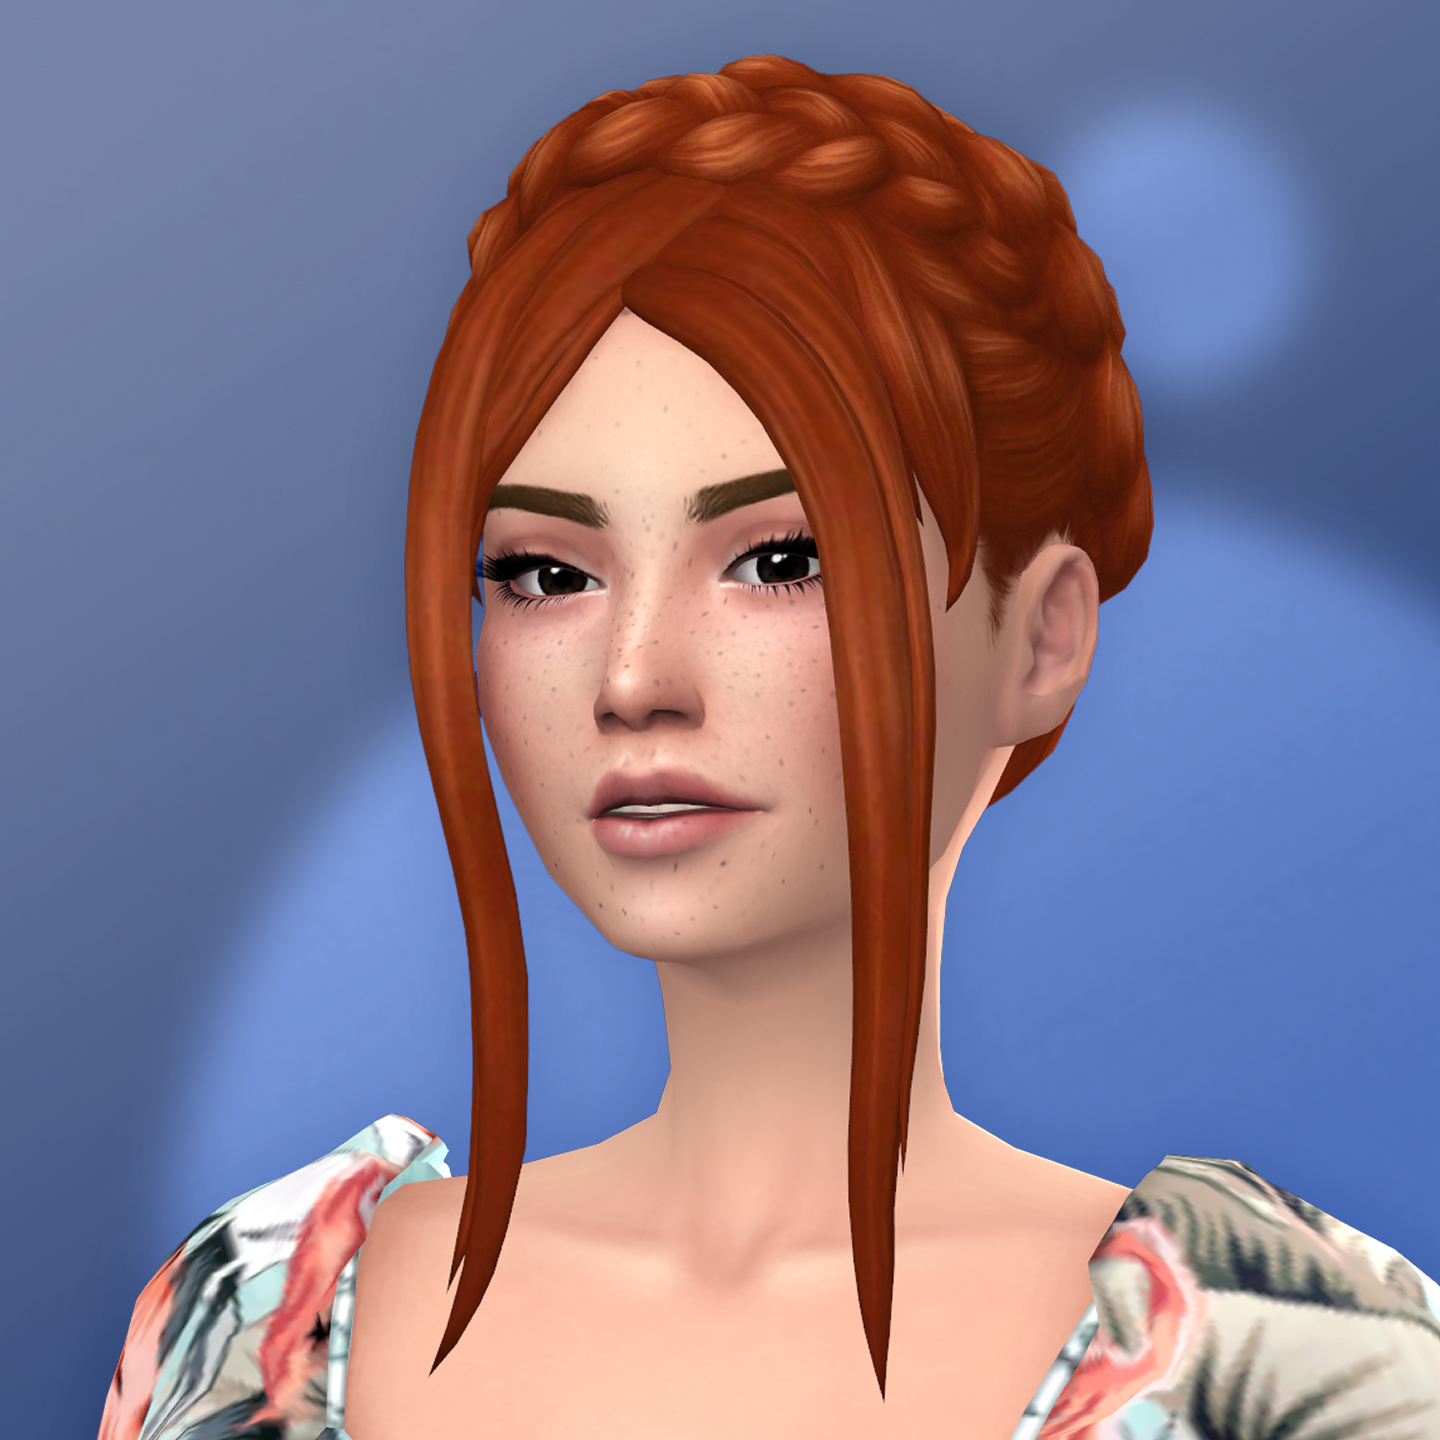 QICC - Jenifer Hair - The Sims 4 Create a Sim - CurseForge